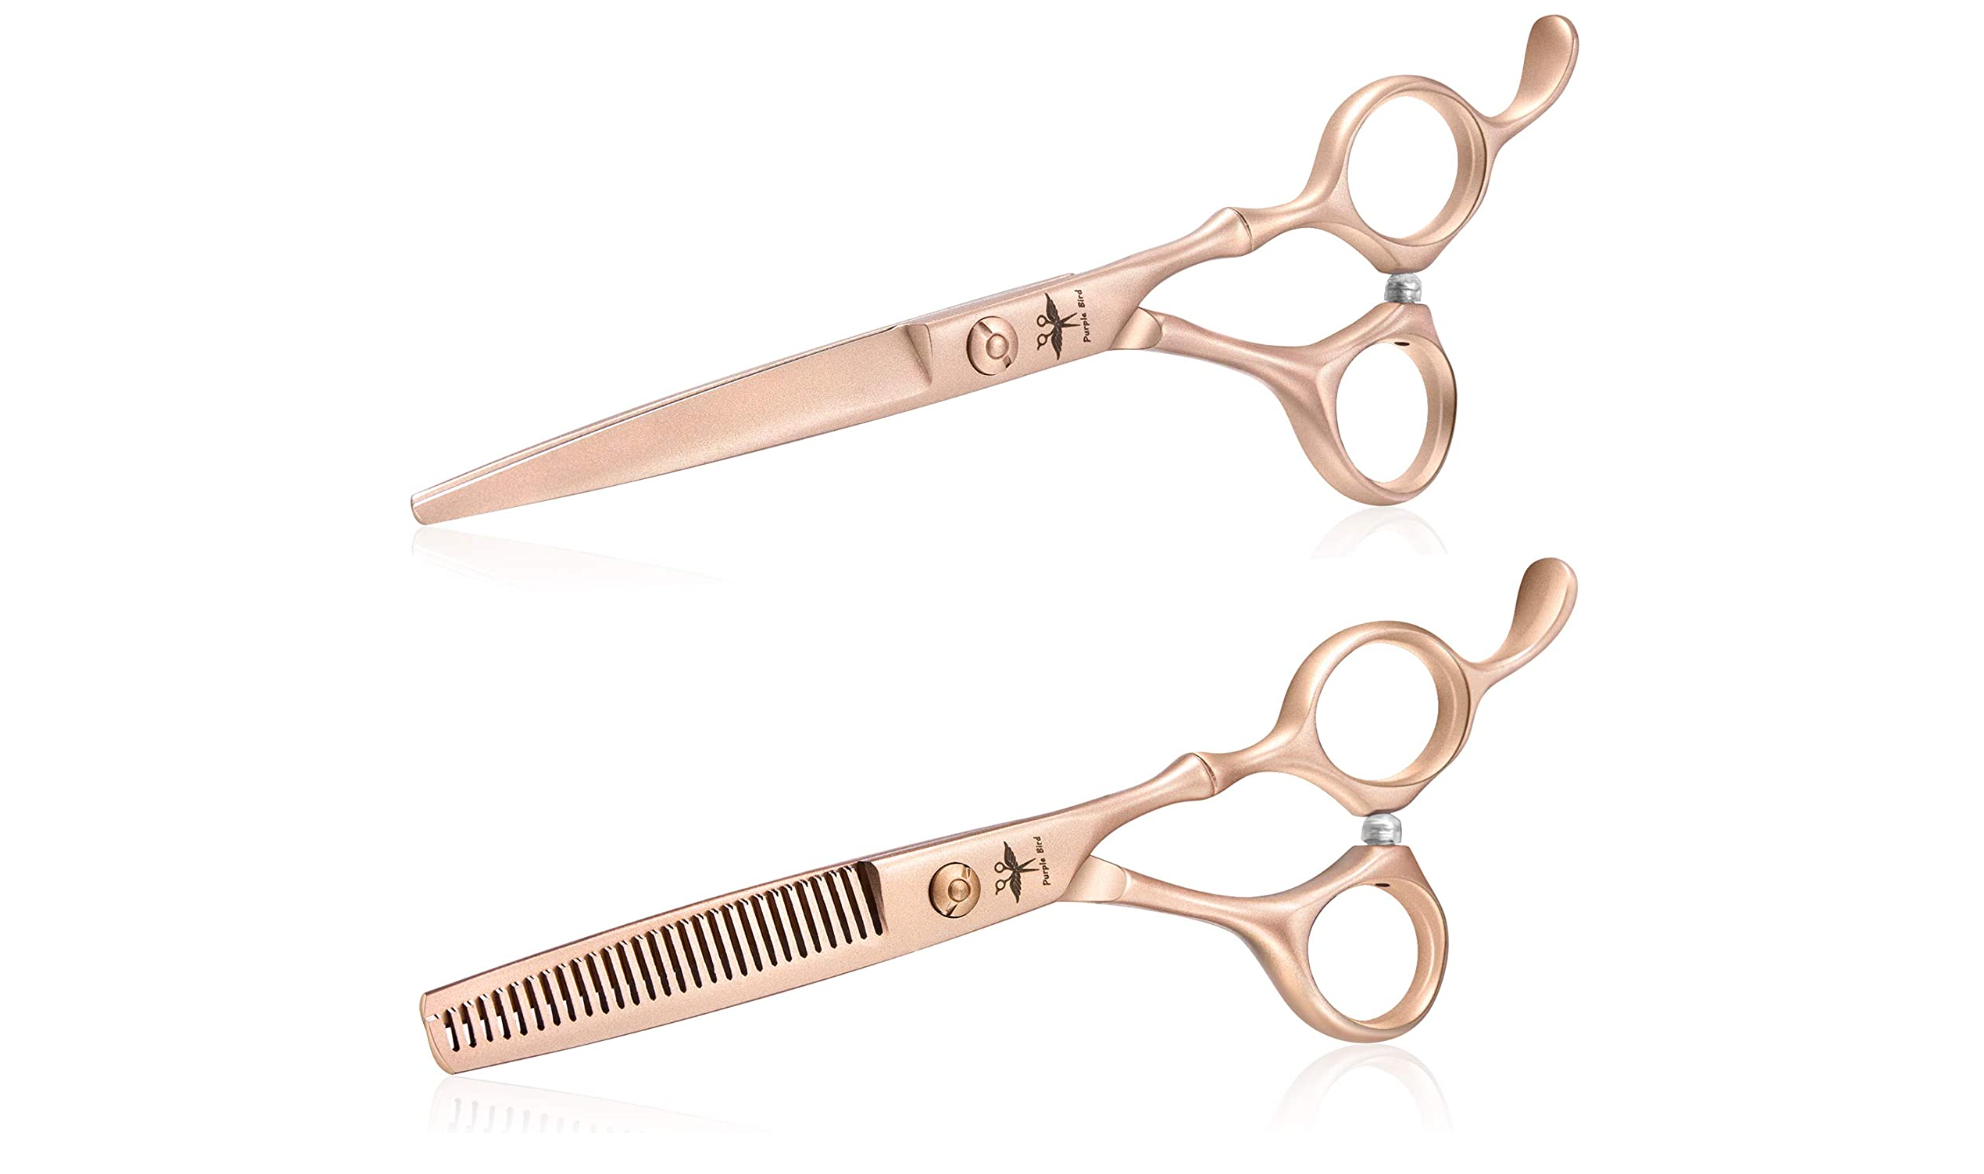 Hair trimming scissors for women